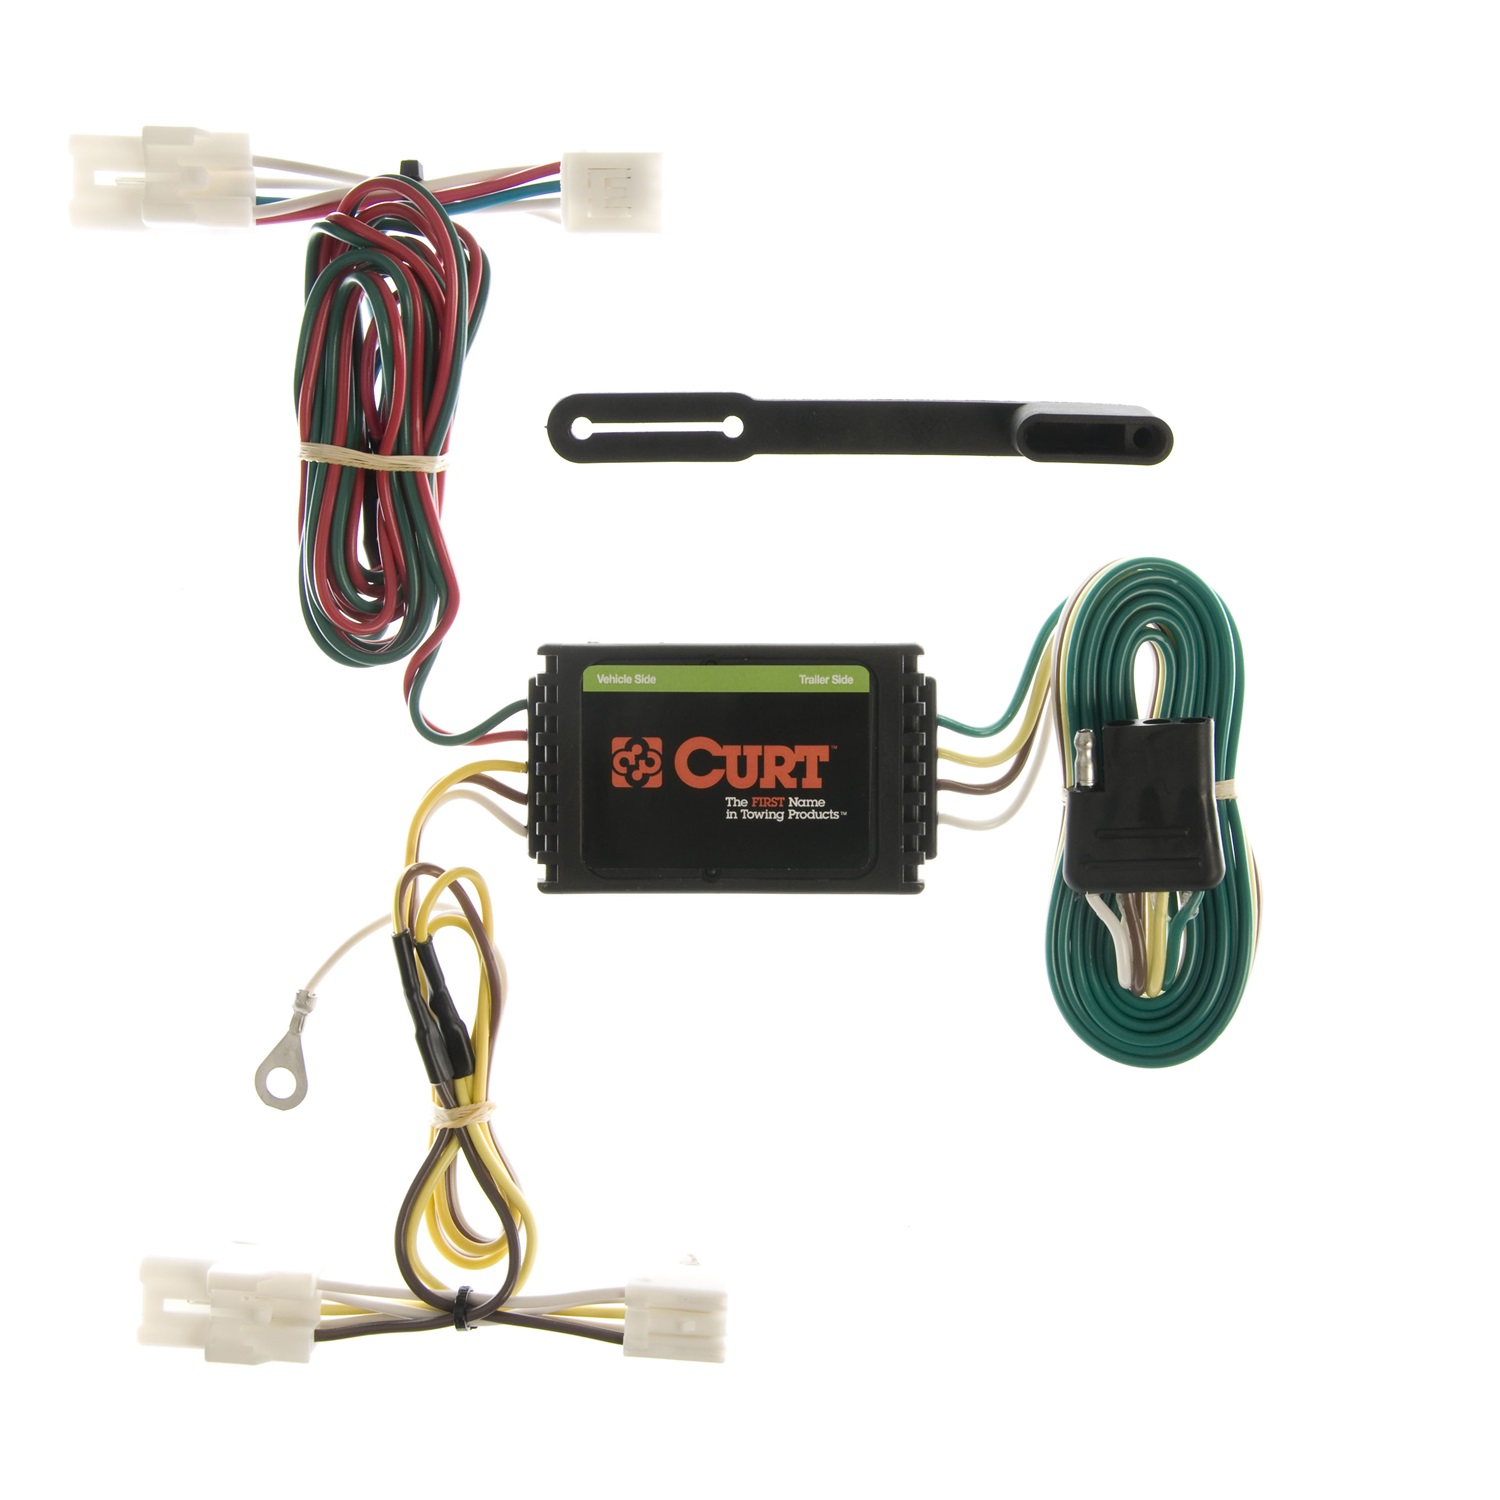 CURT Manufacturing CURT Manufacturing 55309 Wiring T-Connectors 02-05 Fits Sedona